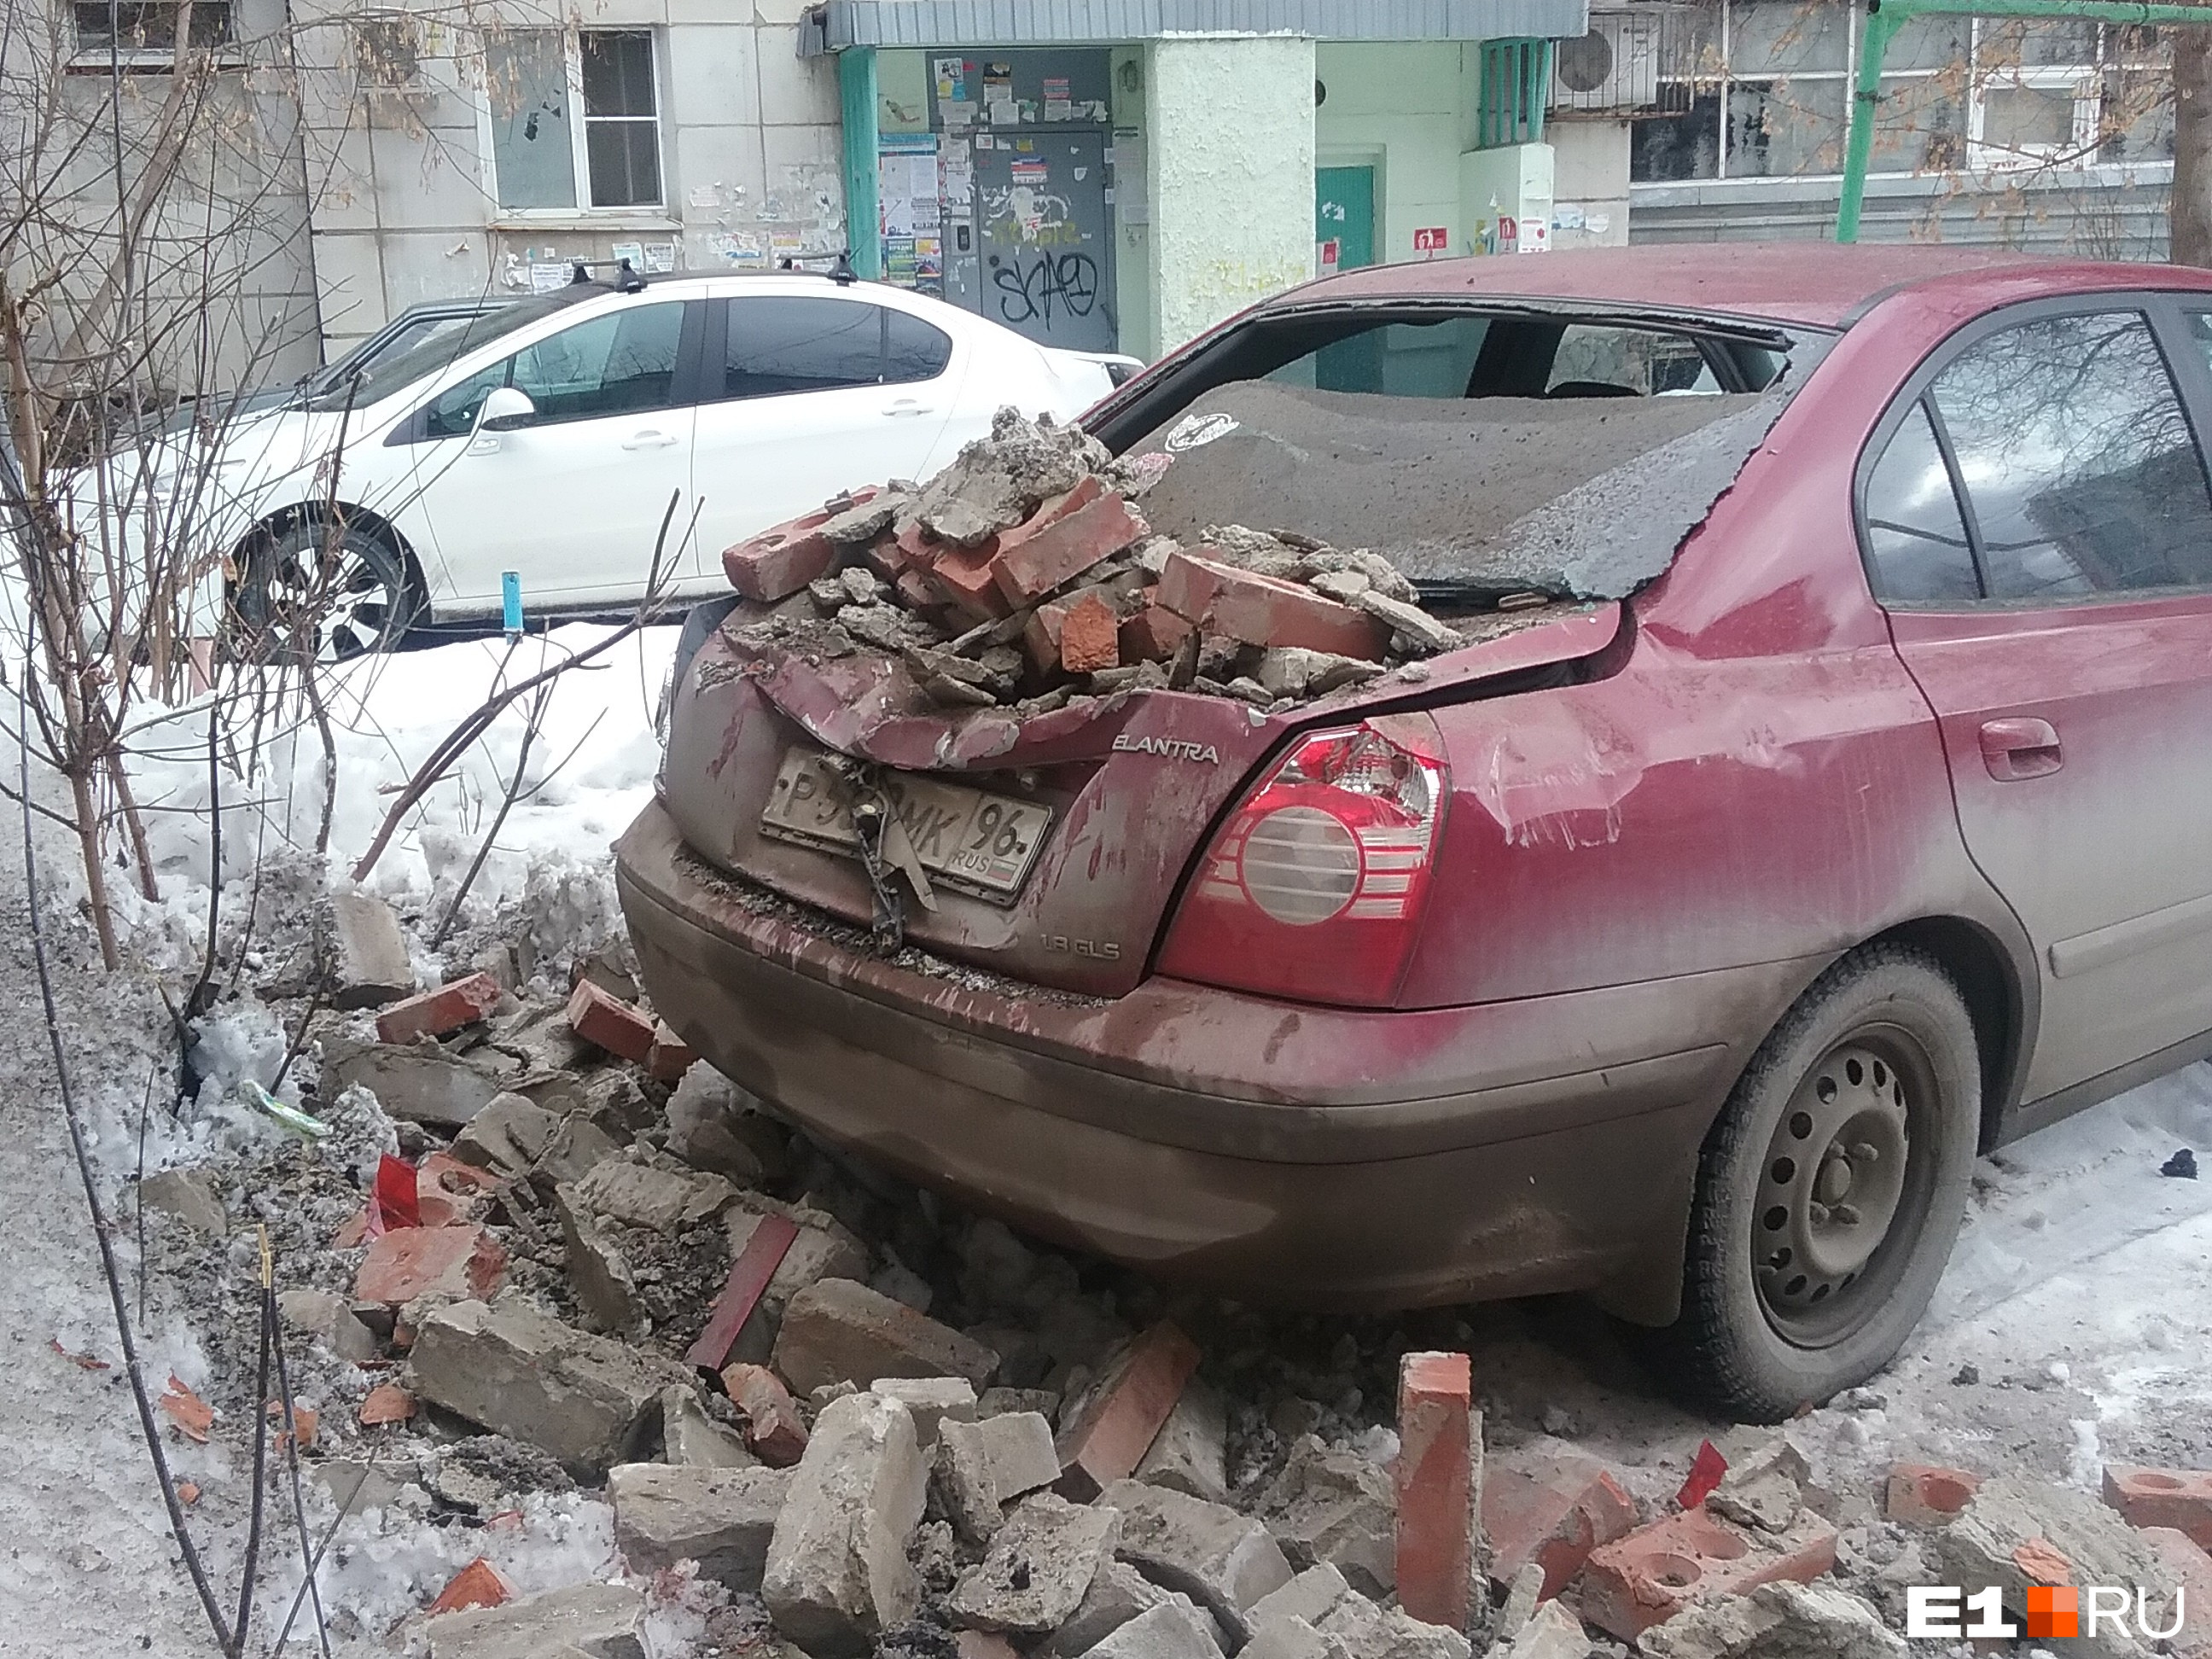 Владелец машины говорит, что на ремонт машины придется потратить около 100 тысяч рублей